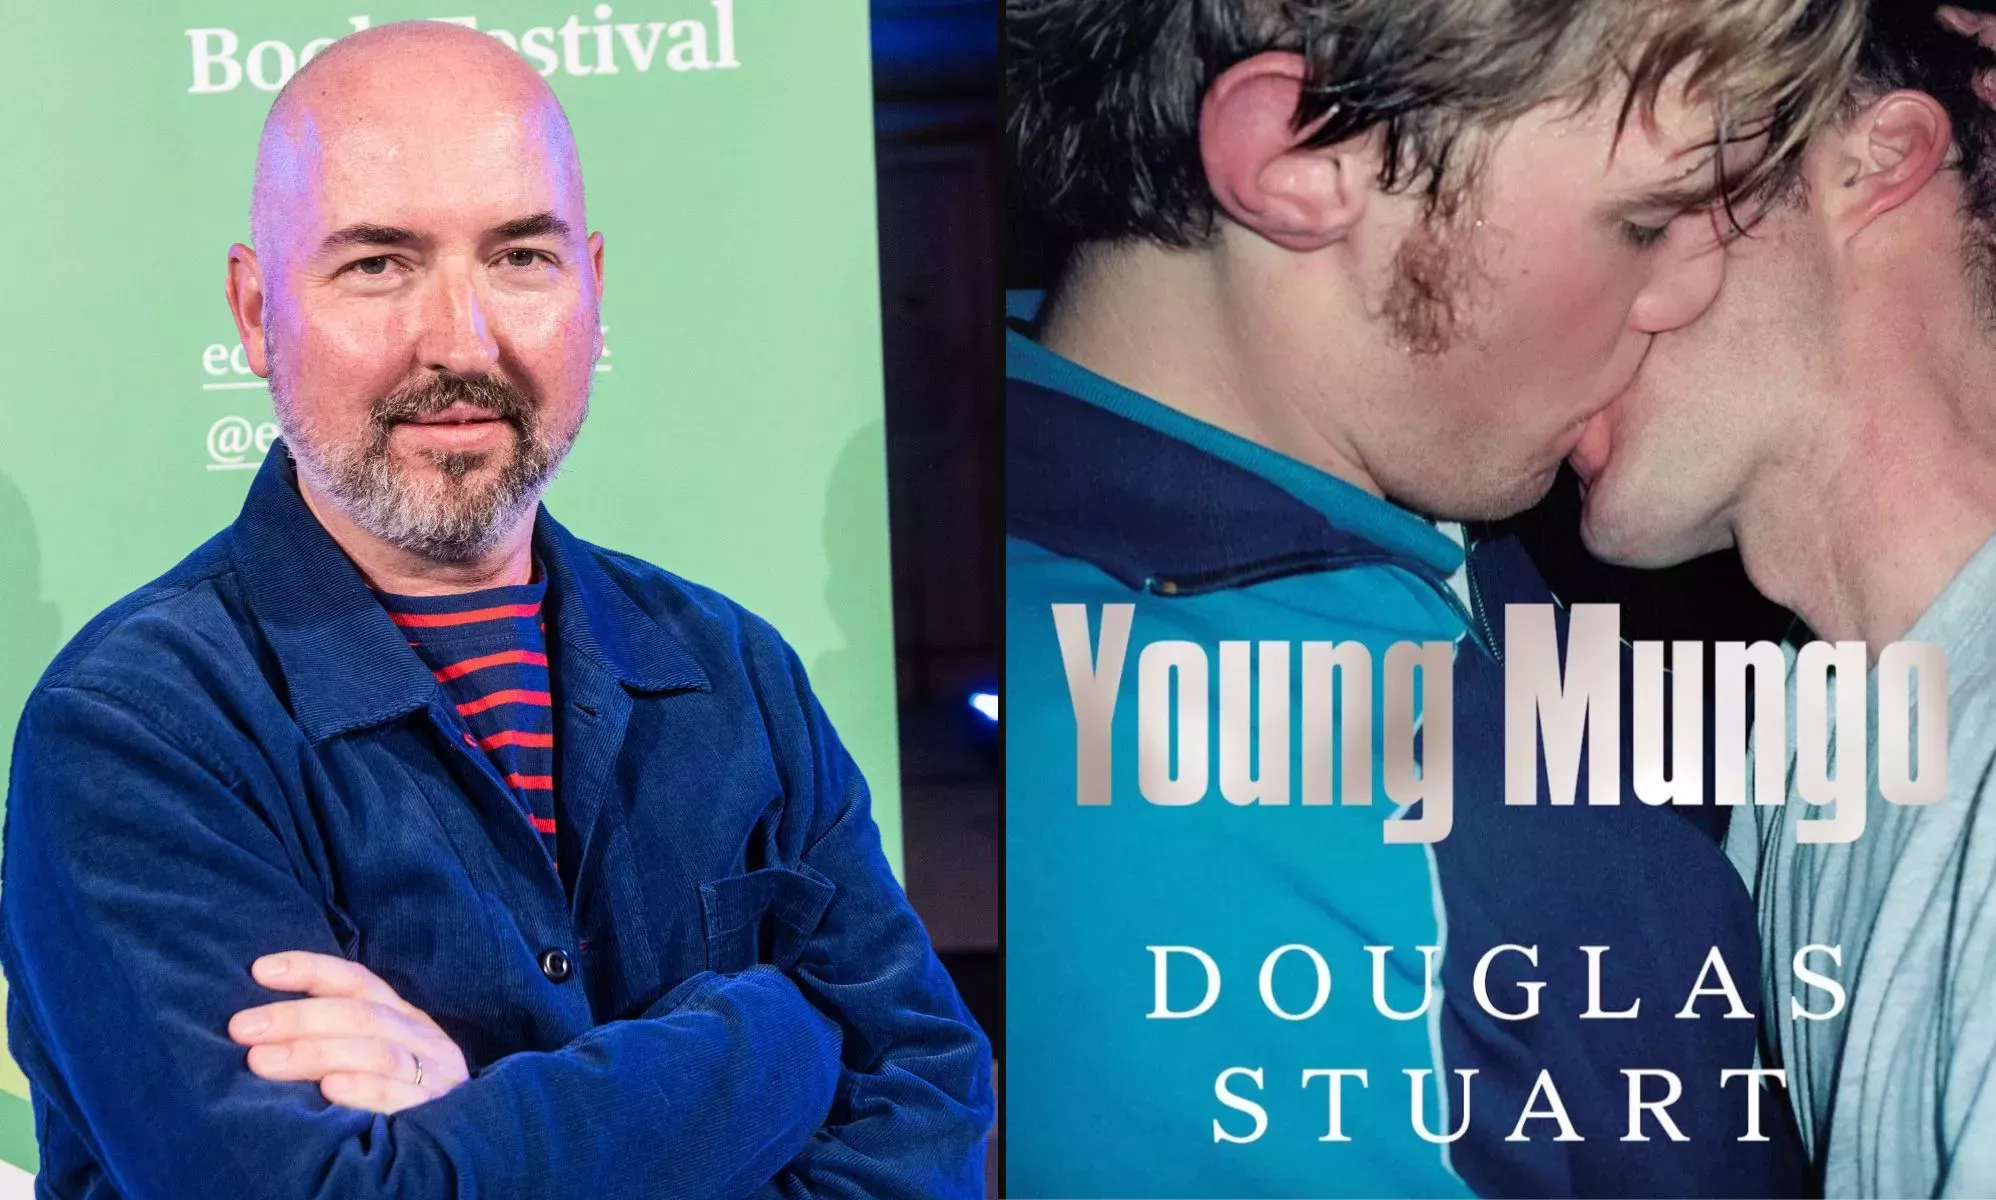 Young Mungo, la devastadora historia de amor entre homosexuales de Douglas Stuart, será adaptada a una nueva serie de televisión.